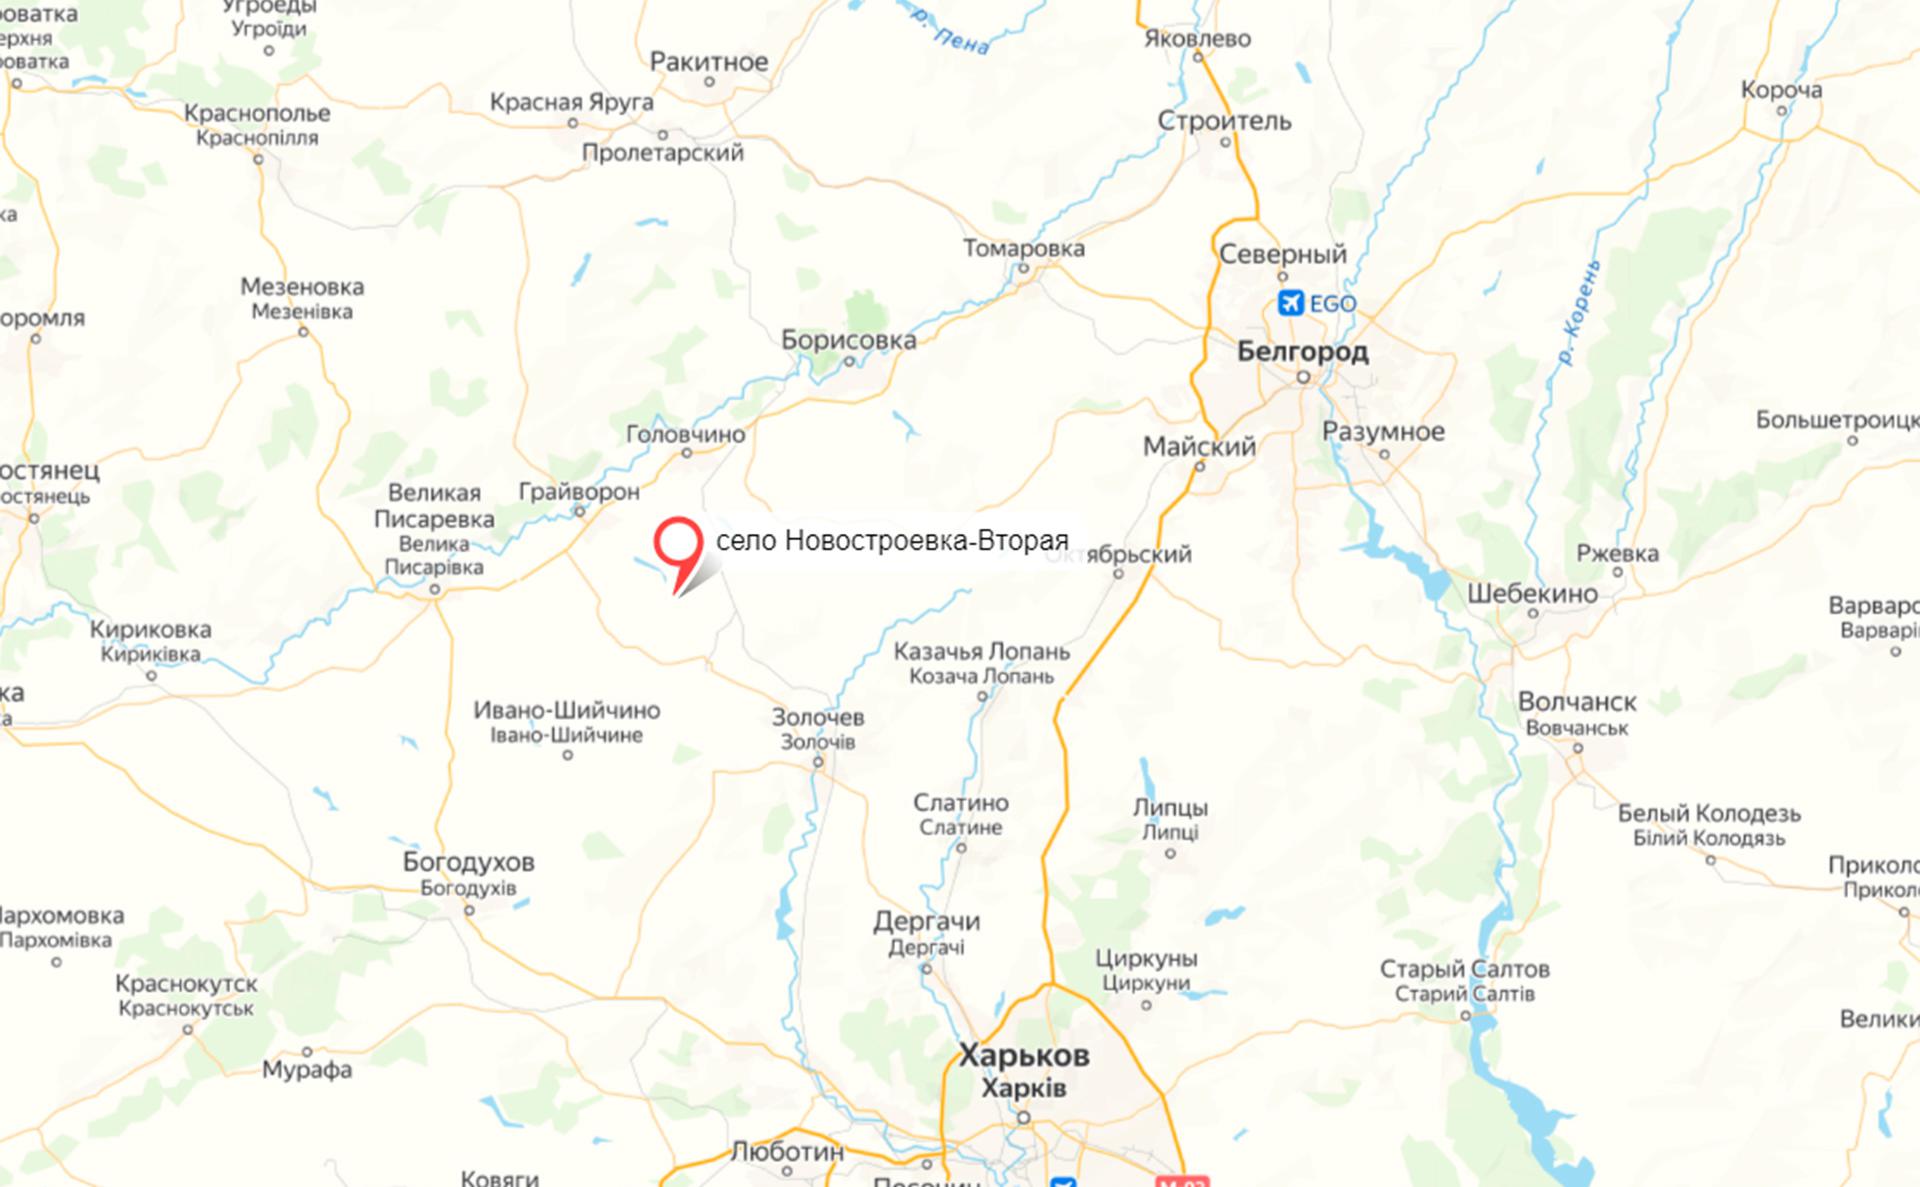 Гладков сообщил об обстреле села в Белгородской области